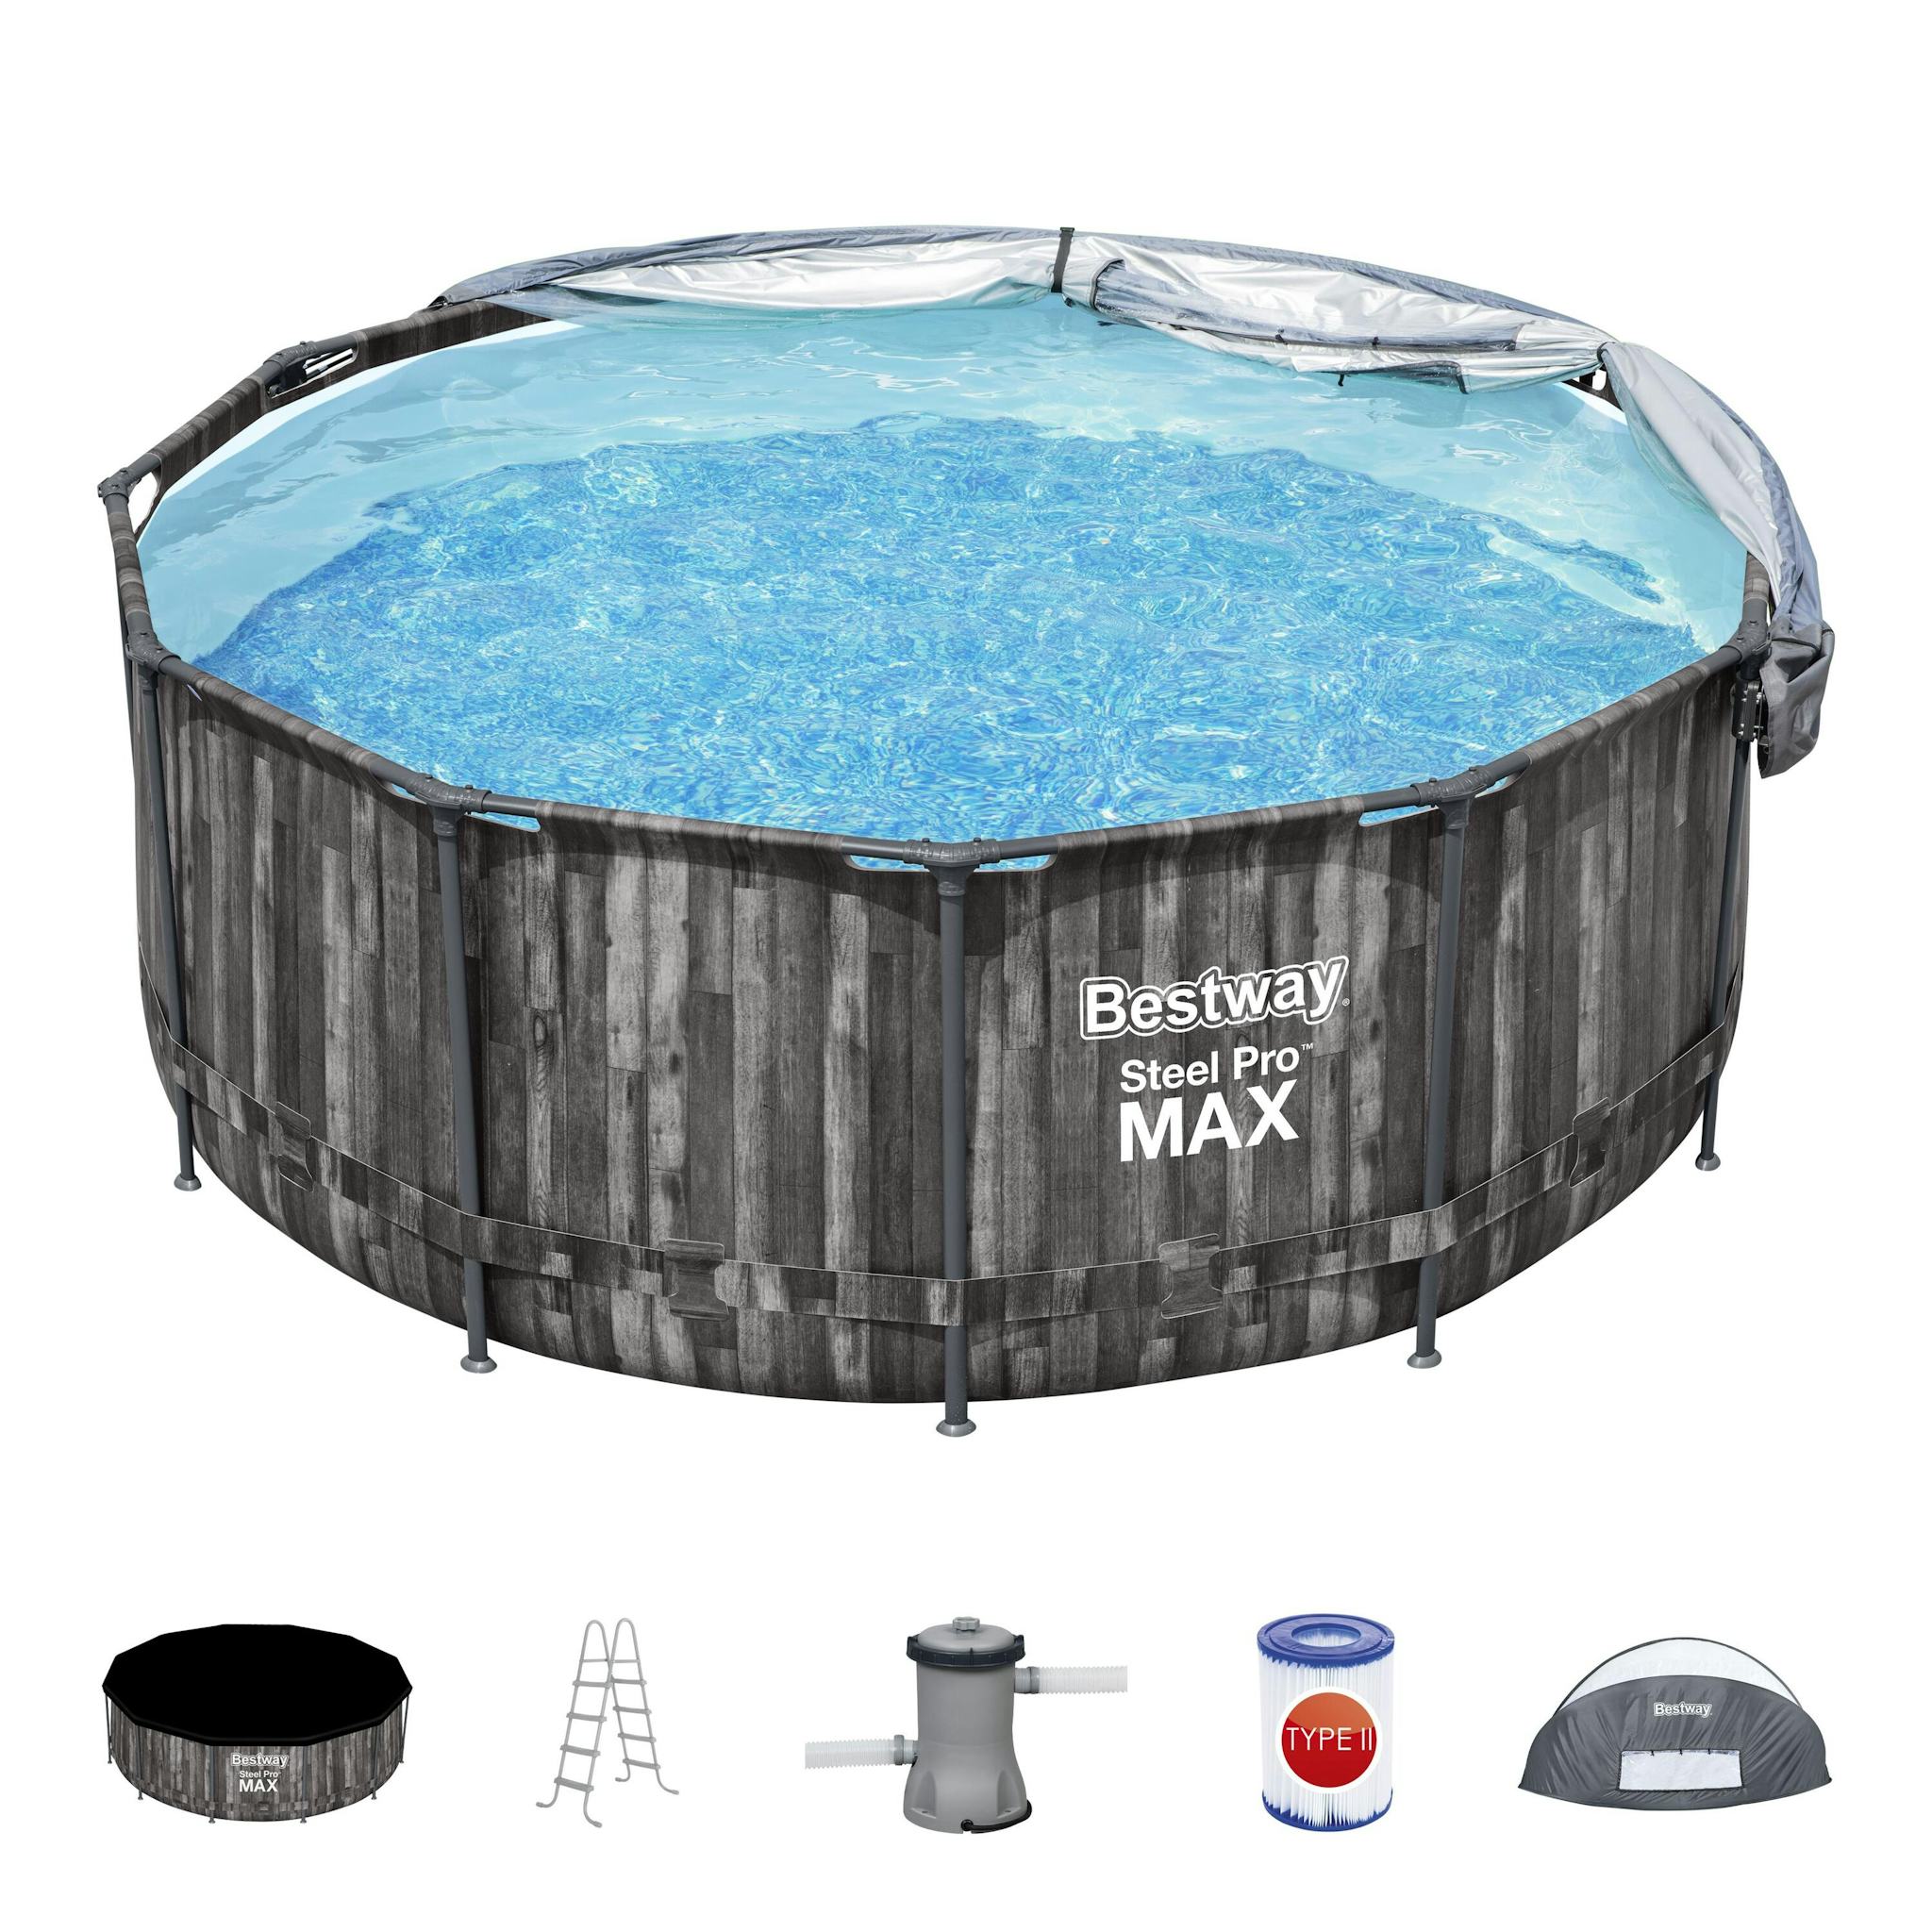 Bovengronds zwembad Steel Pro MAX bovengrondse ronde set van 366x122 cm met zonnescherm Bestway 2